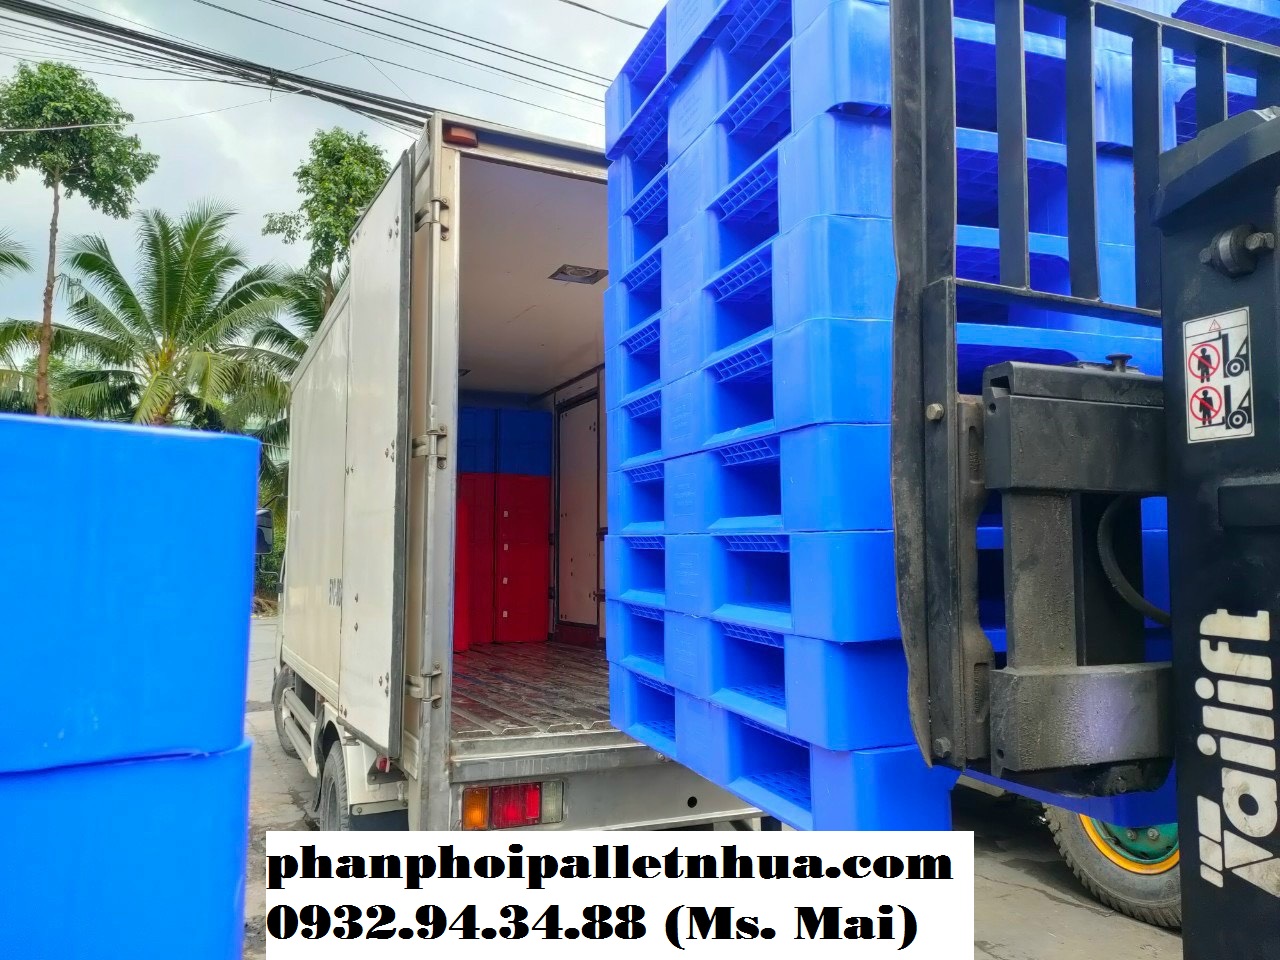 Pallet nhựa tại Quảng Bình, liên hệ 0932943488 (24/7)